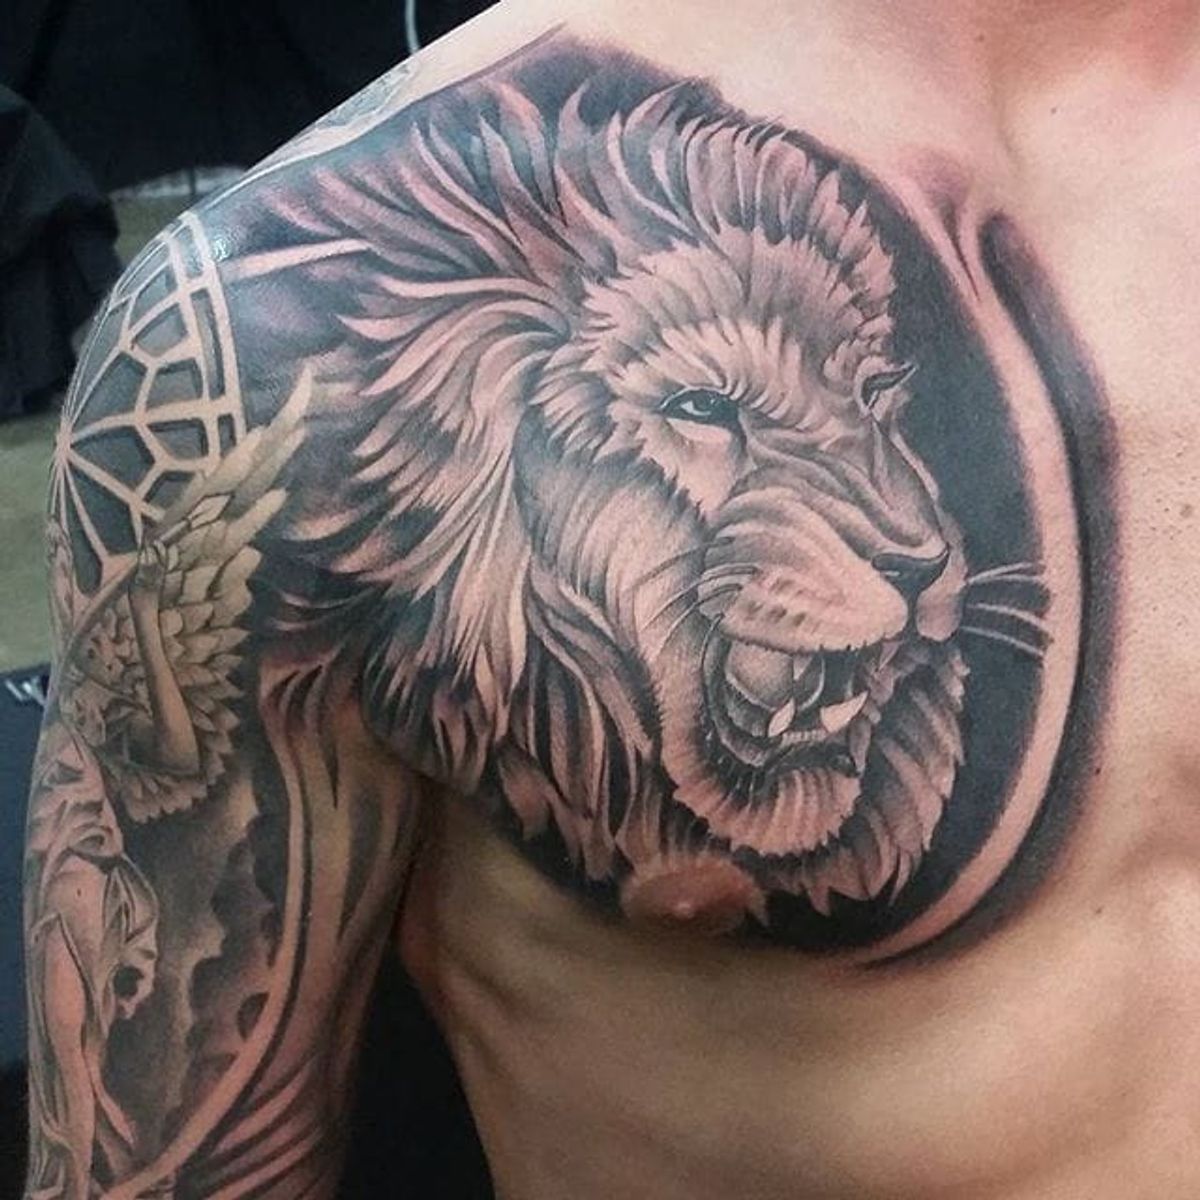 Tattoo uploaded by Stacie Mayer • Black and grey lion chest piece by  dotyink. #blackandgrey #realism #dotyink #lion • Tattoodo